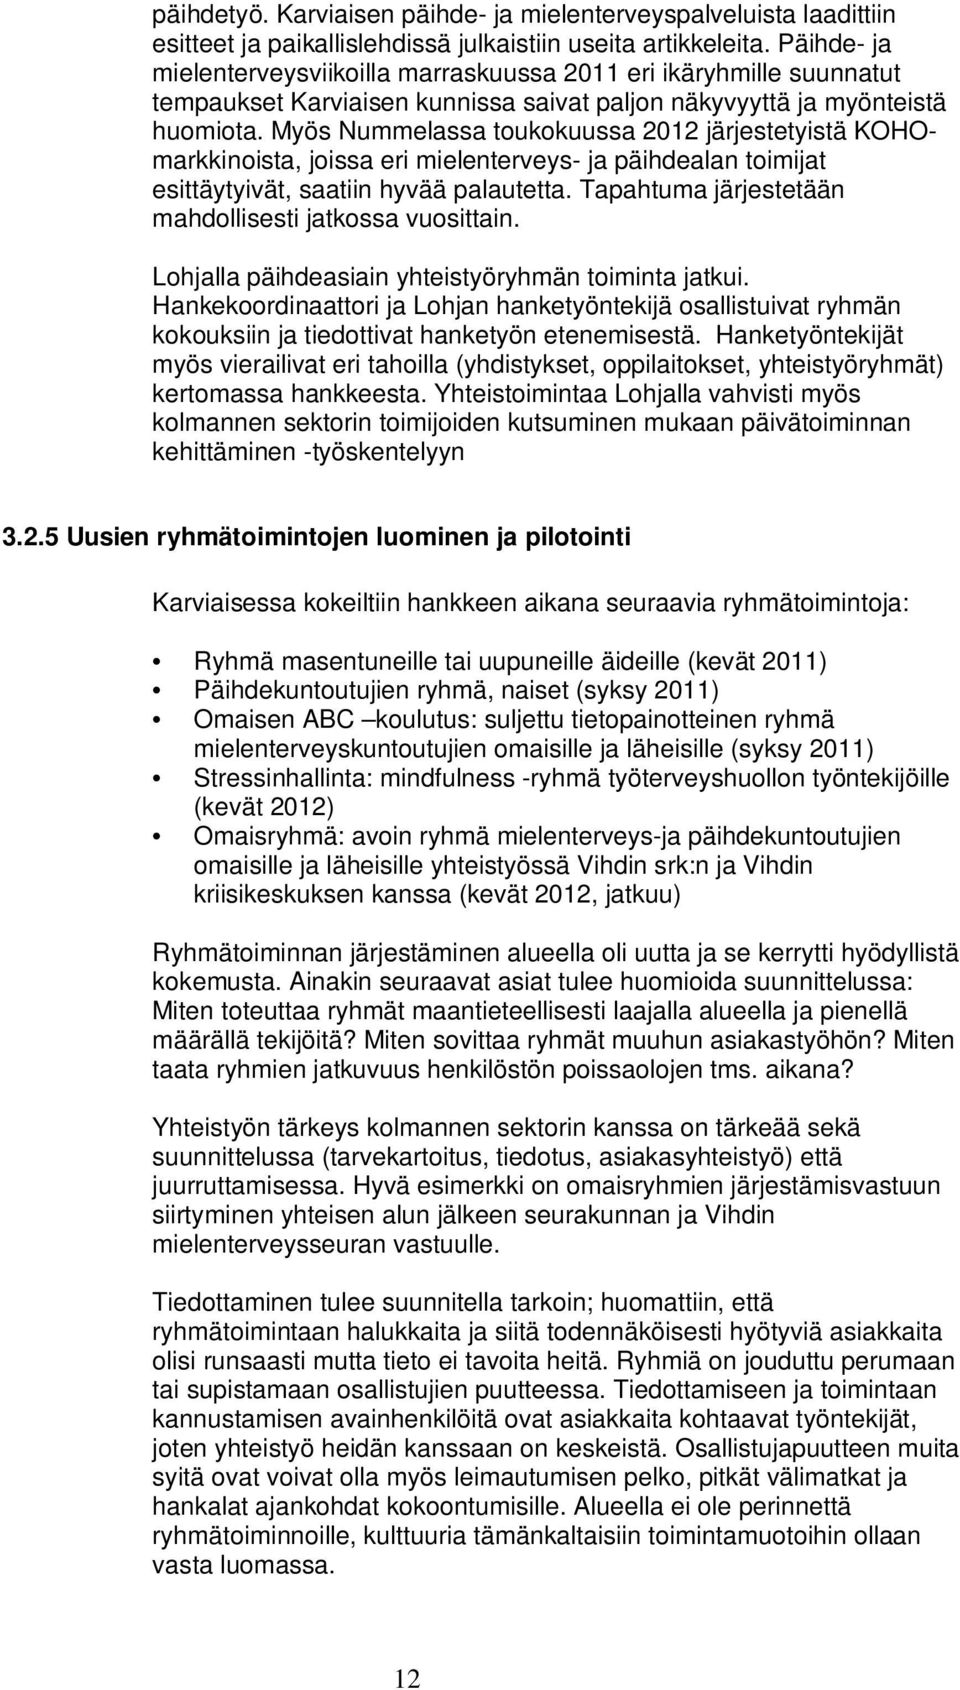 Myös Nummelassa toukokuussa 2012 järjestetyistä KOHOmarkkinoista, joissa eri mielenterveys- ja päihdealan toimijat esittäytyivät, saatiin hyvää palautetta.